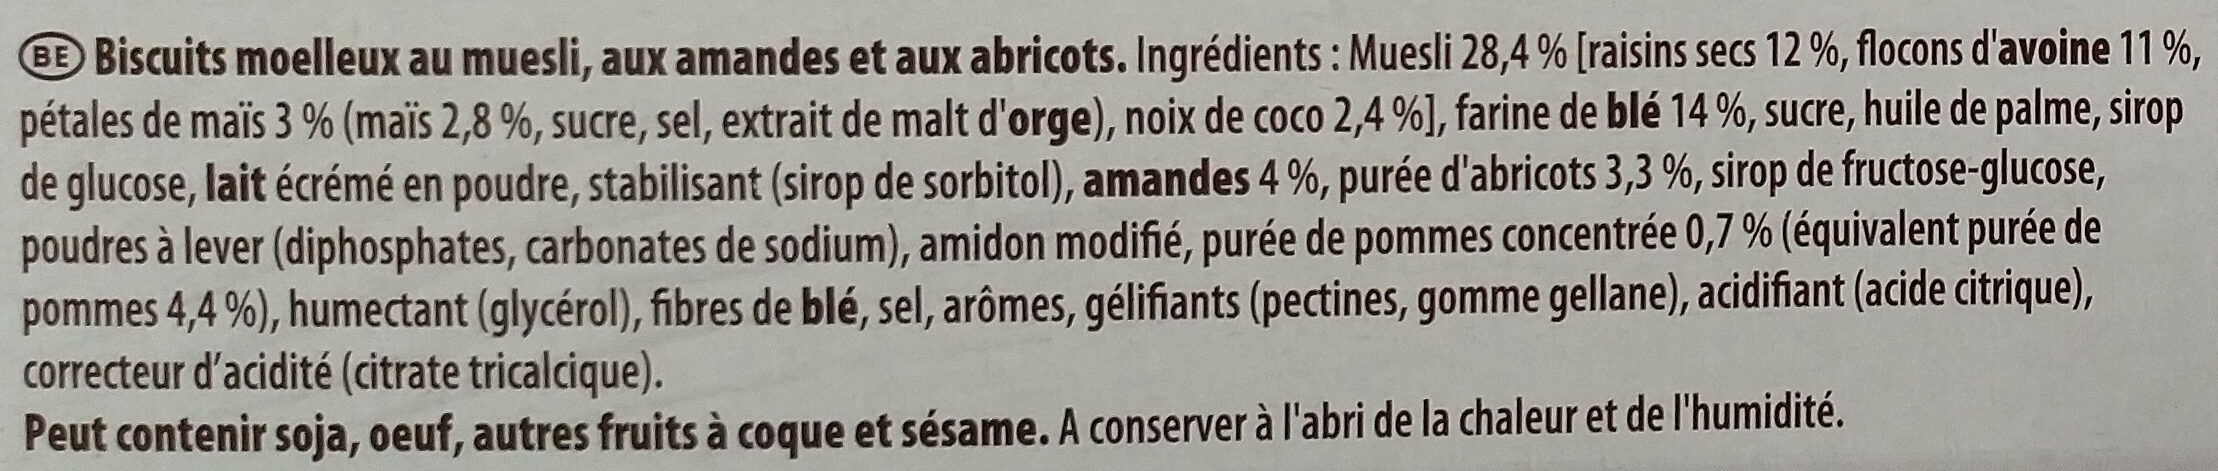 Grany Moelleux Amande-Abricot - Ingrédients